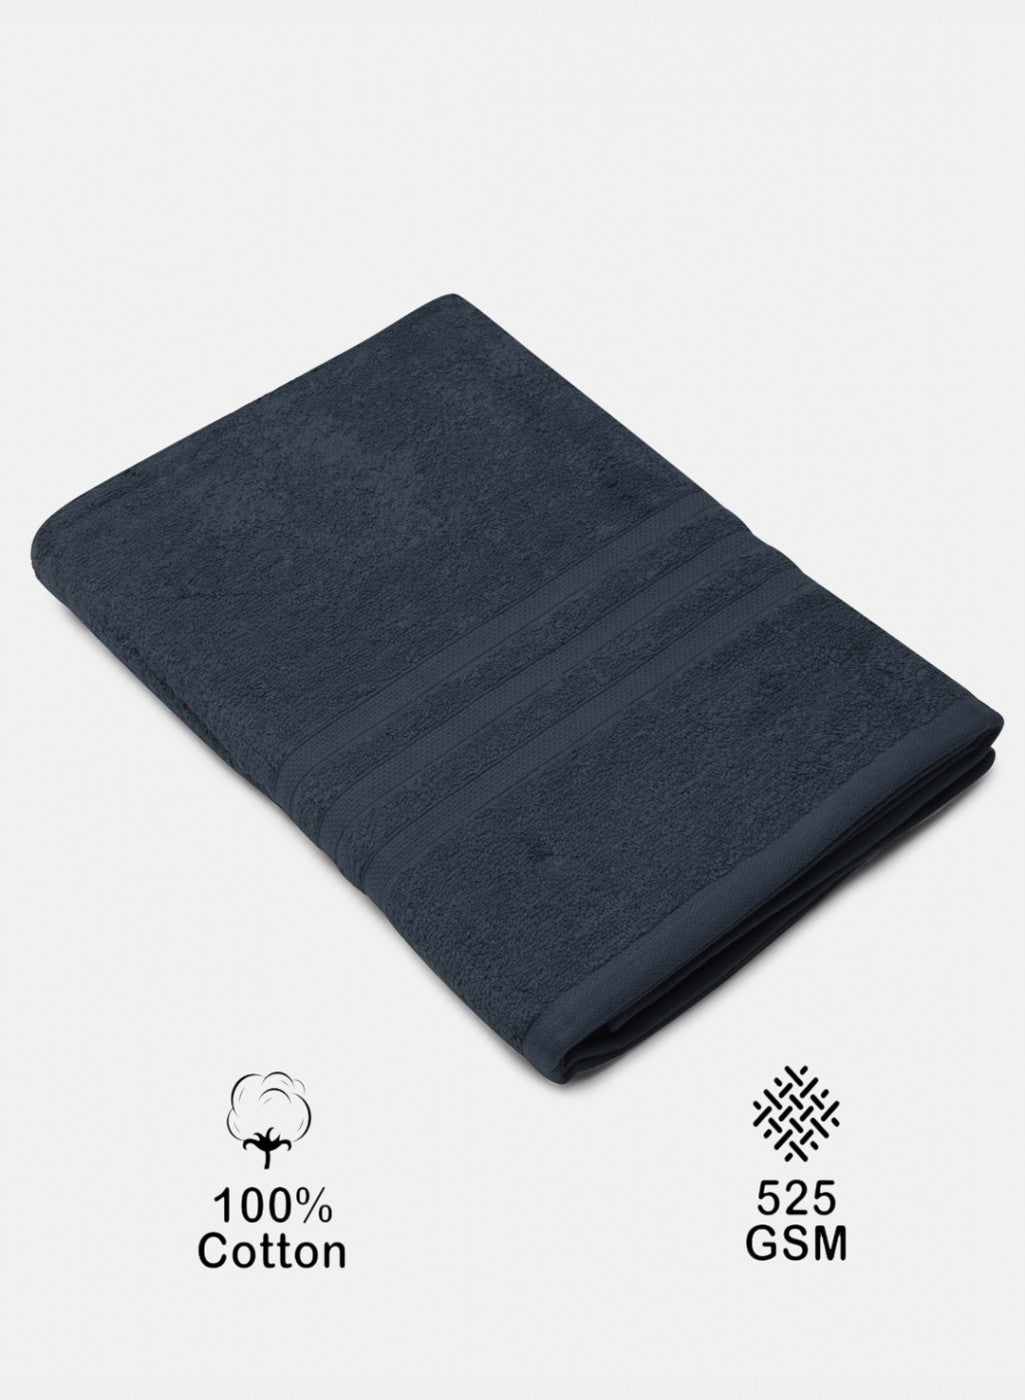 Navy Blue Cotton 525 GSM Bath Towel